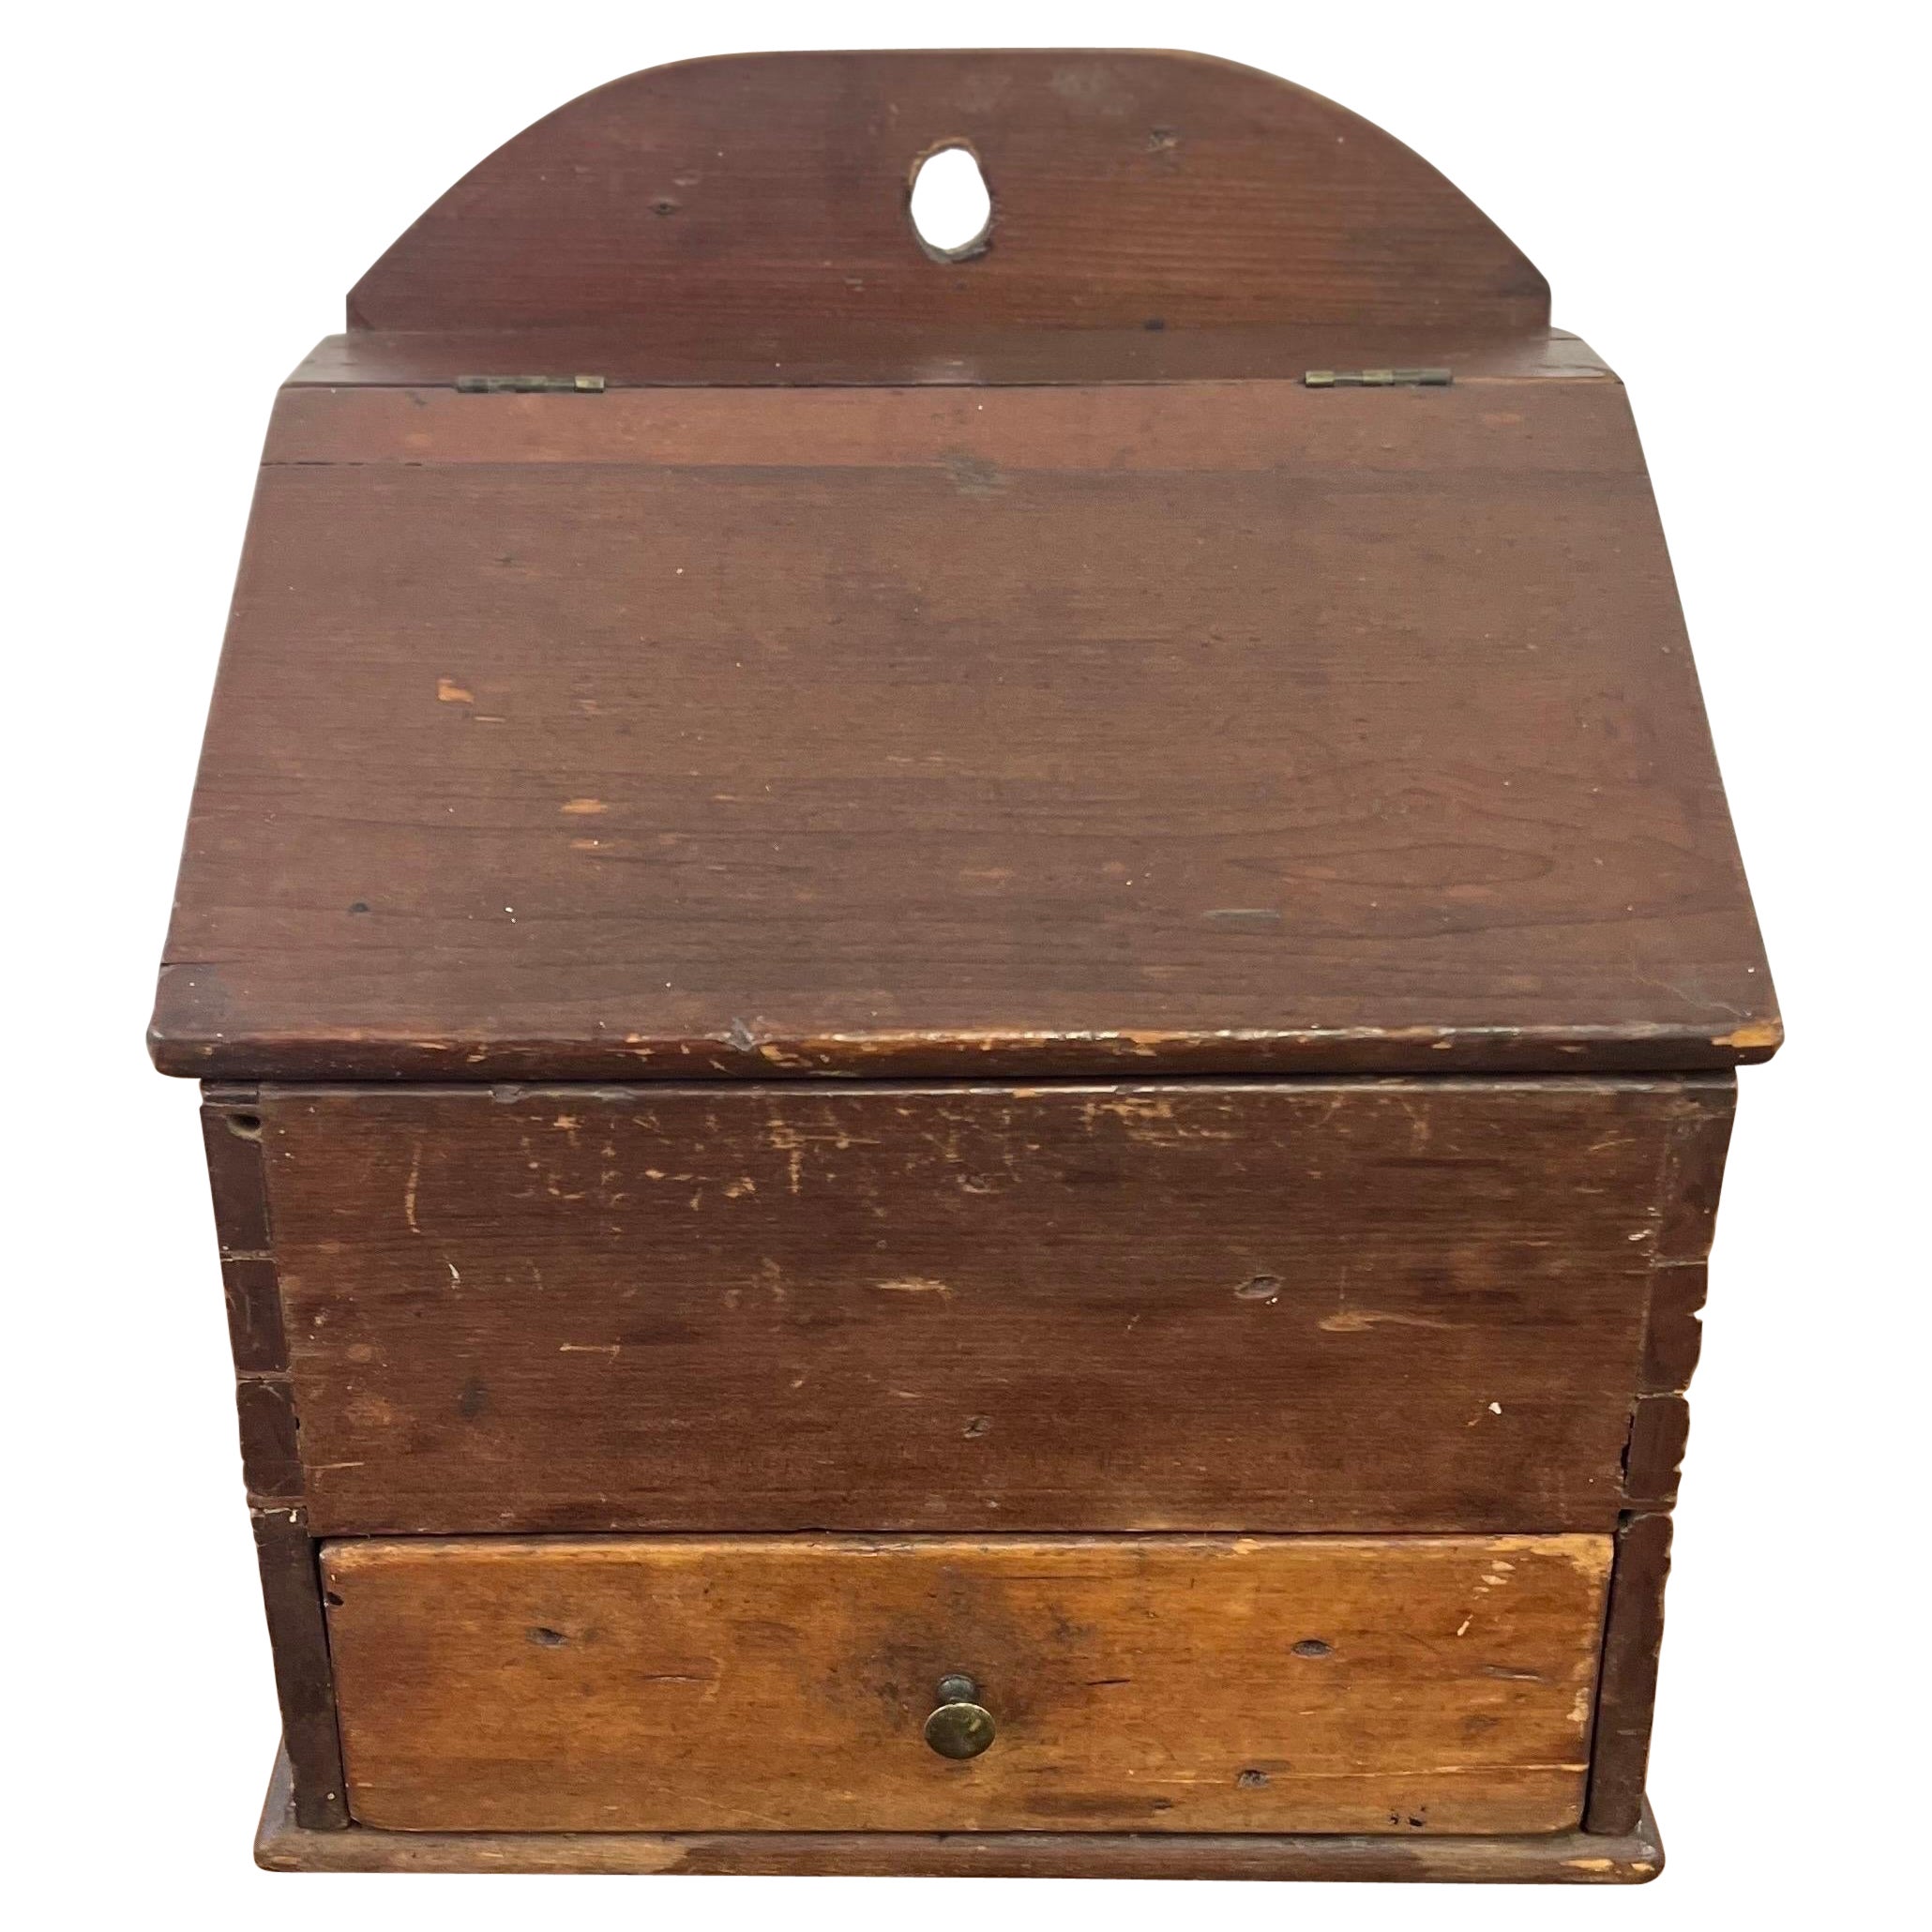 Boîte à épingles à nourrice américaine ancienne datant des années 1800 environ